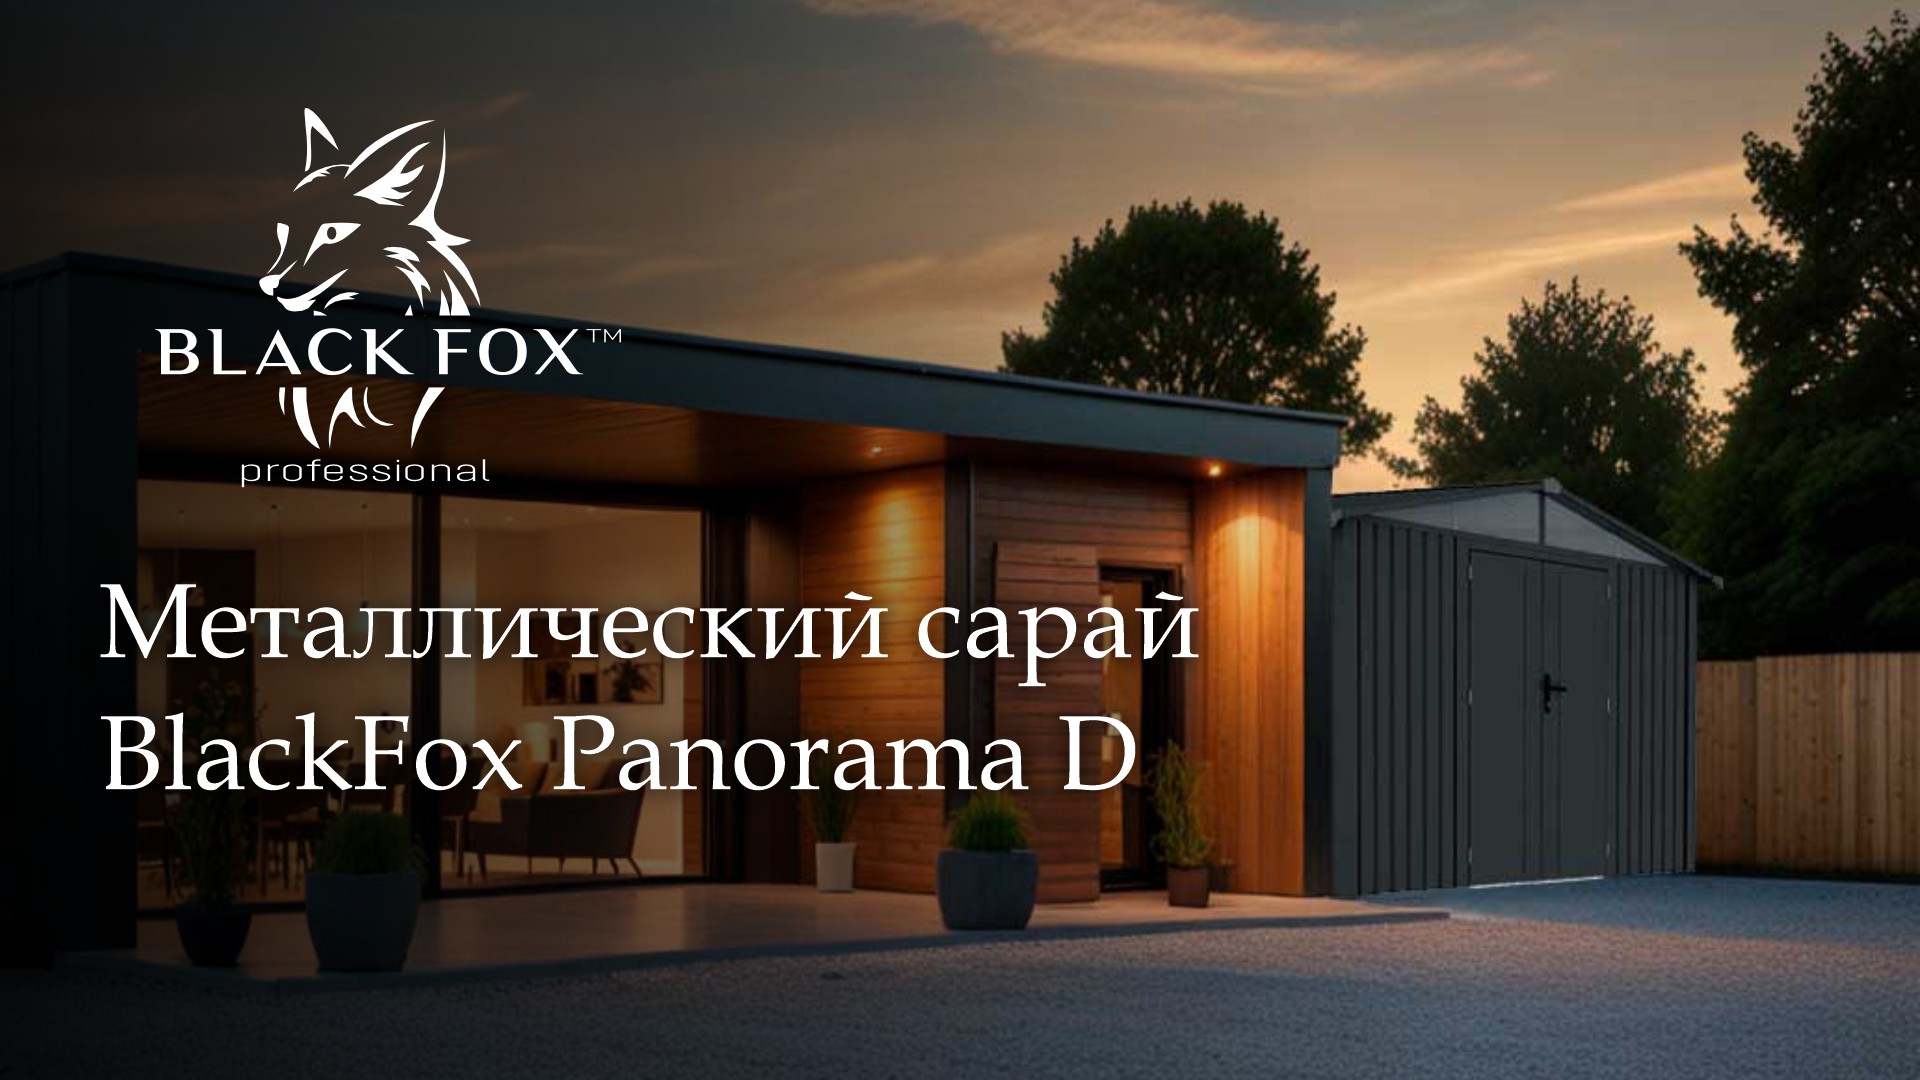 Системы хранения: металлический сарай премиум класса BlackFox Panorama D